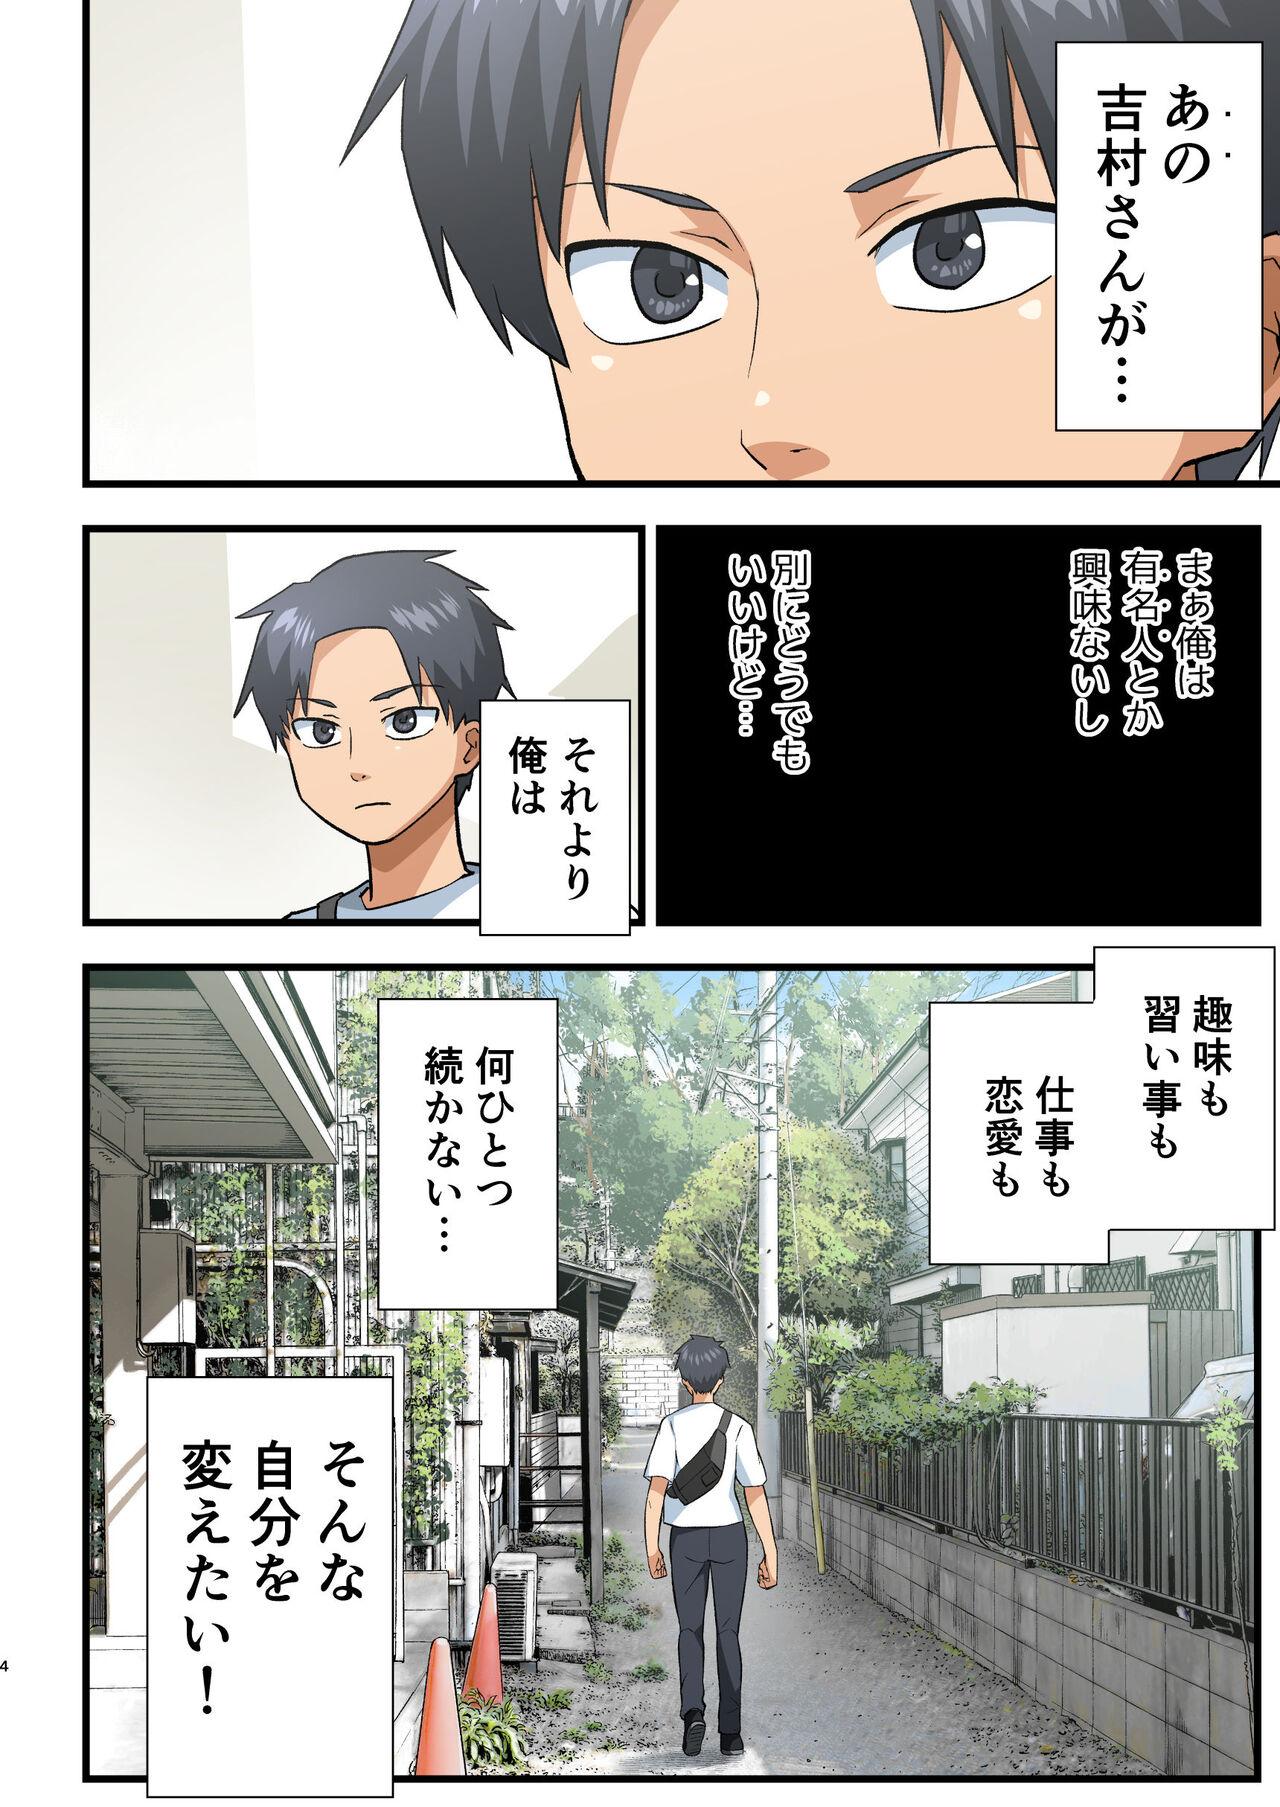 Wet Tatakae! Yoshimura-san! 1 Travesti - Page 3